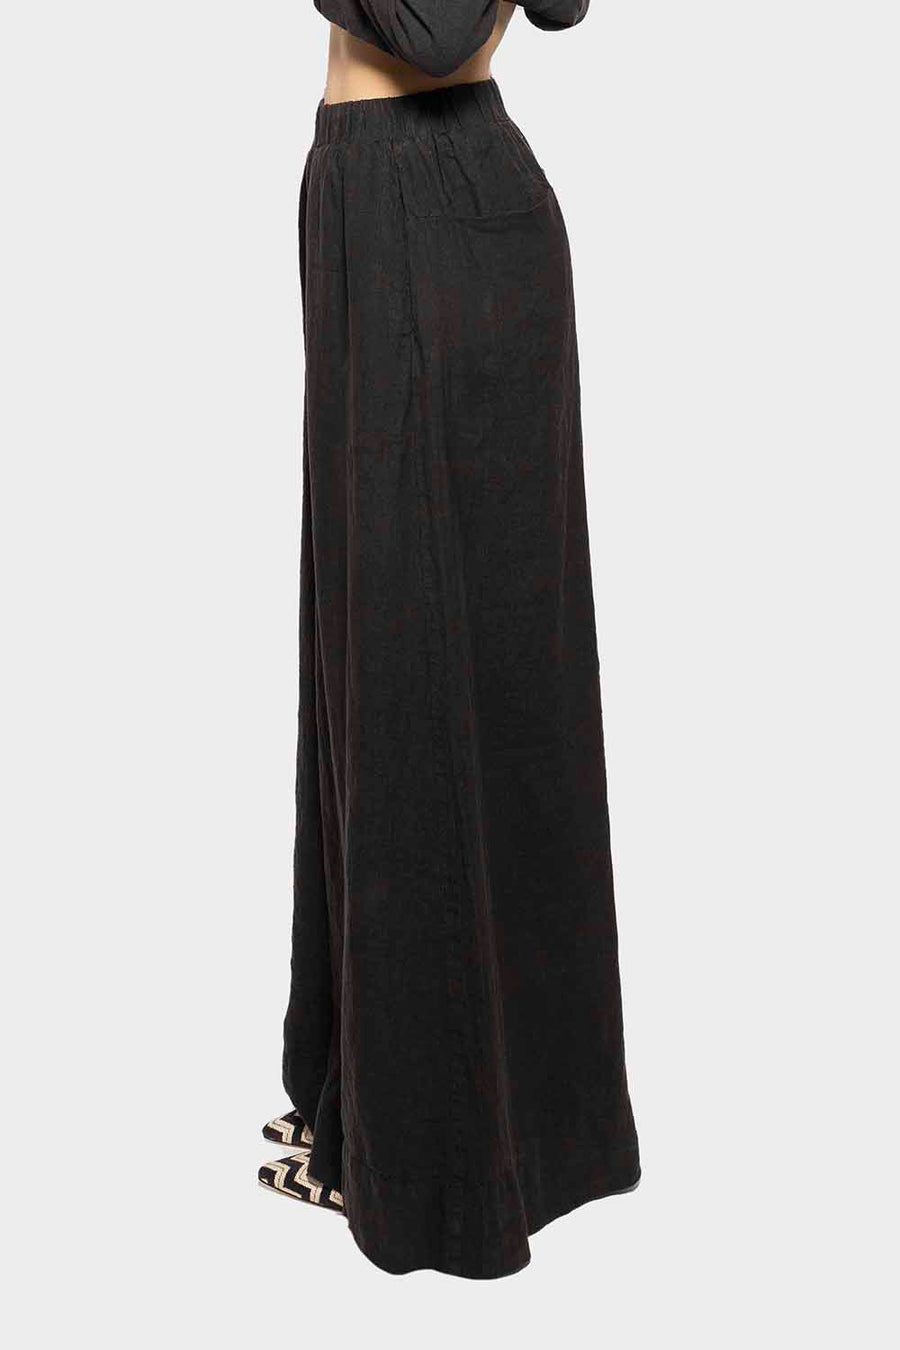 Pantalone Isabella Clementini in lino nero i1324